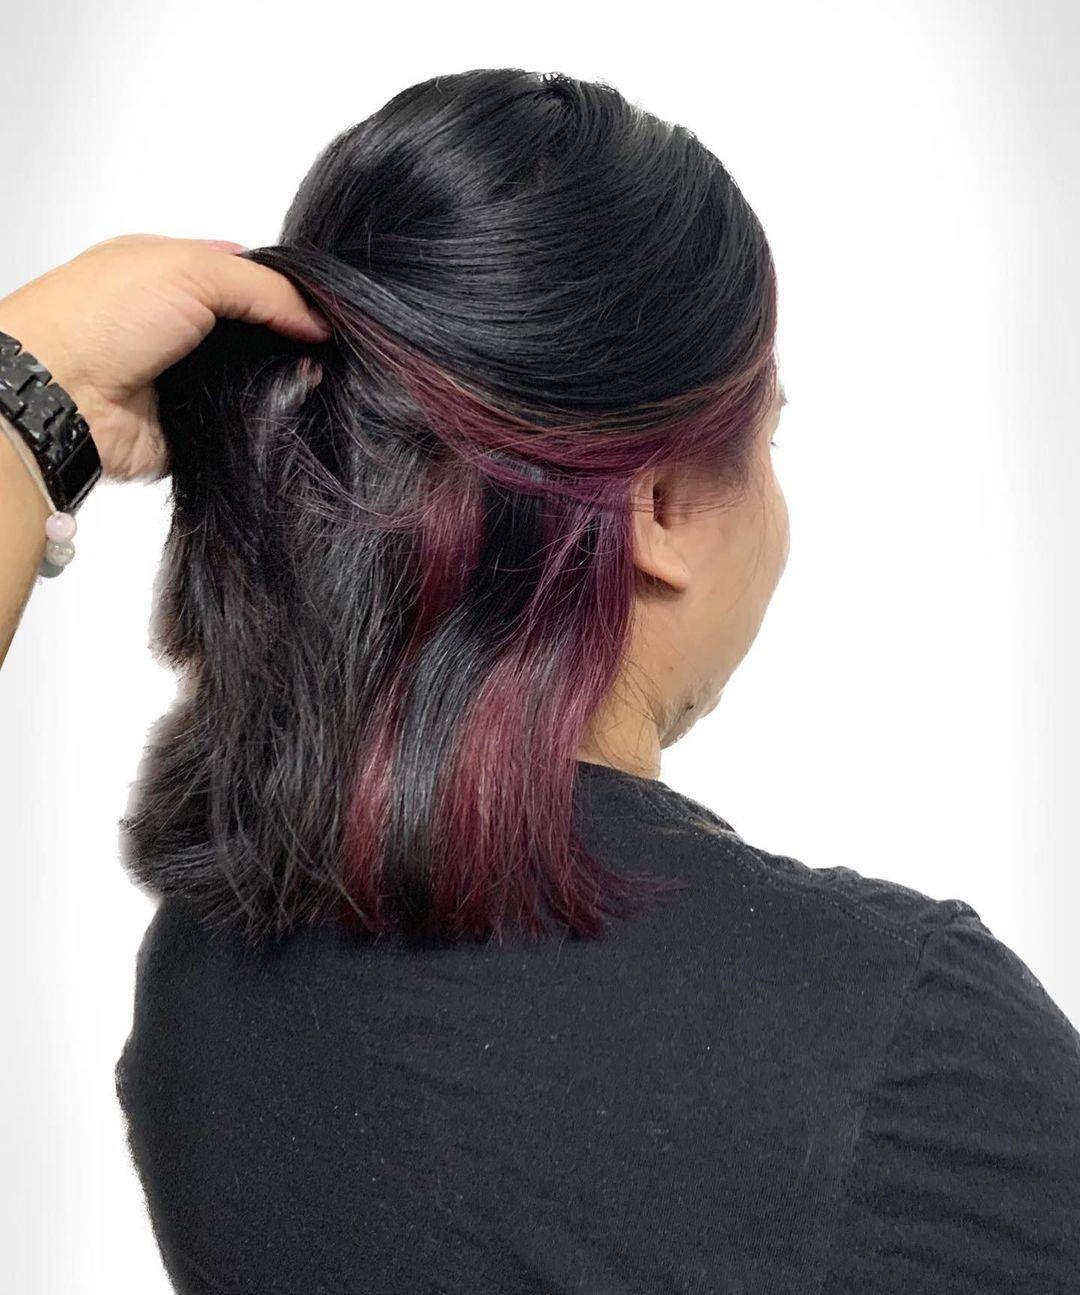 Burgundy hair color 129 burgundy hair color | burgundy hair color for women | burgundy hair color highlights Burgundy Hair Color